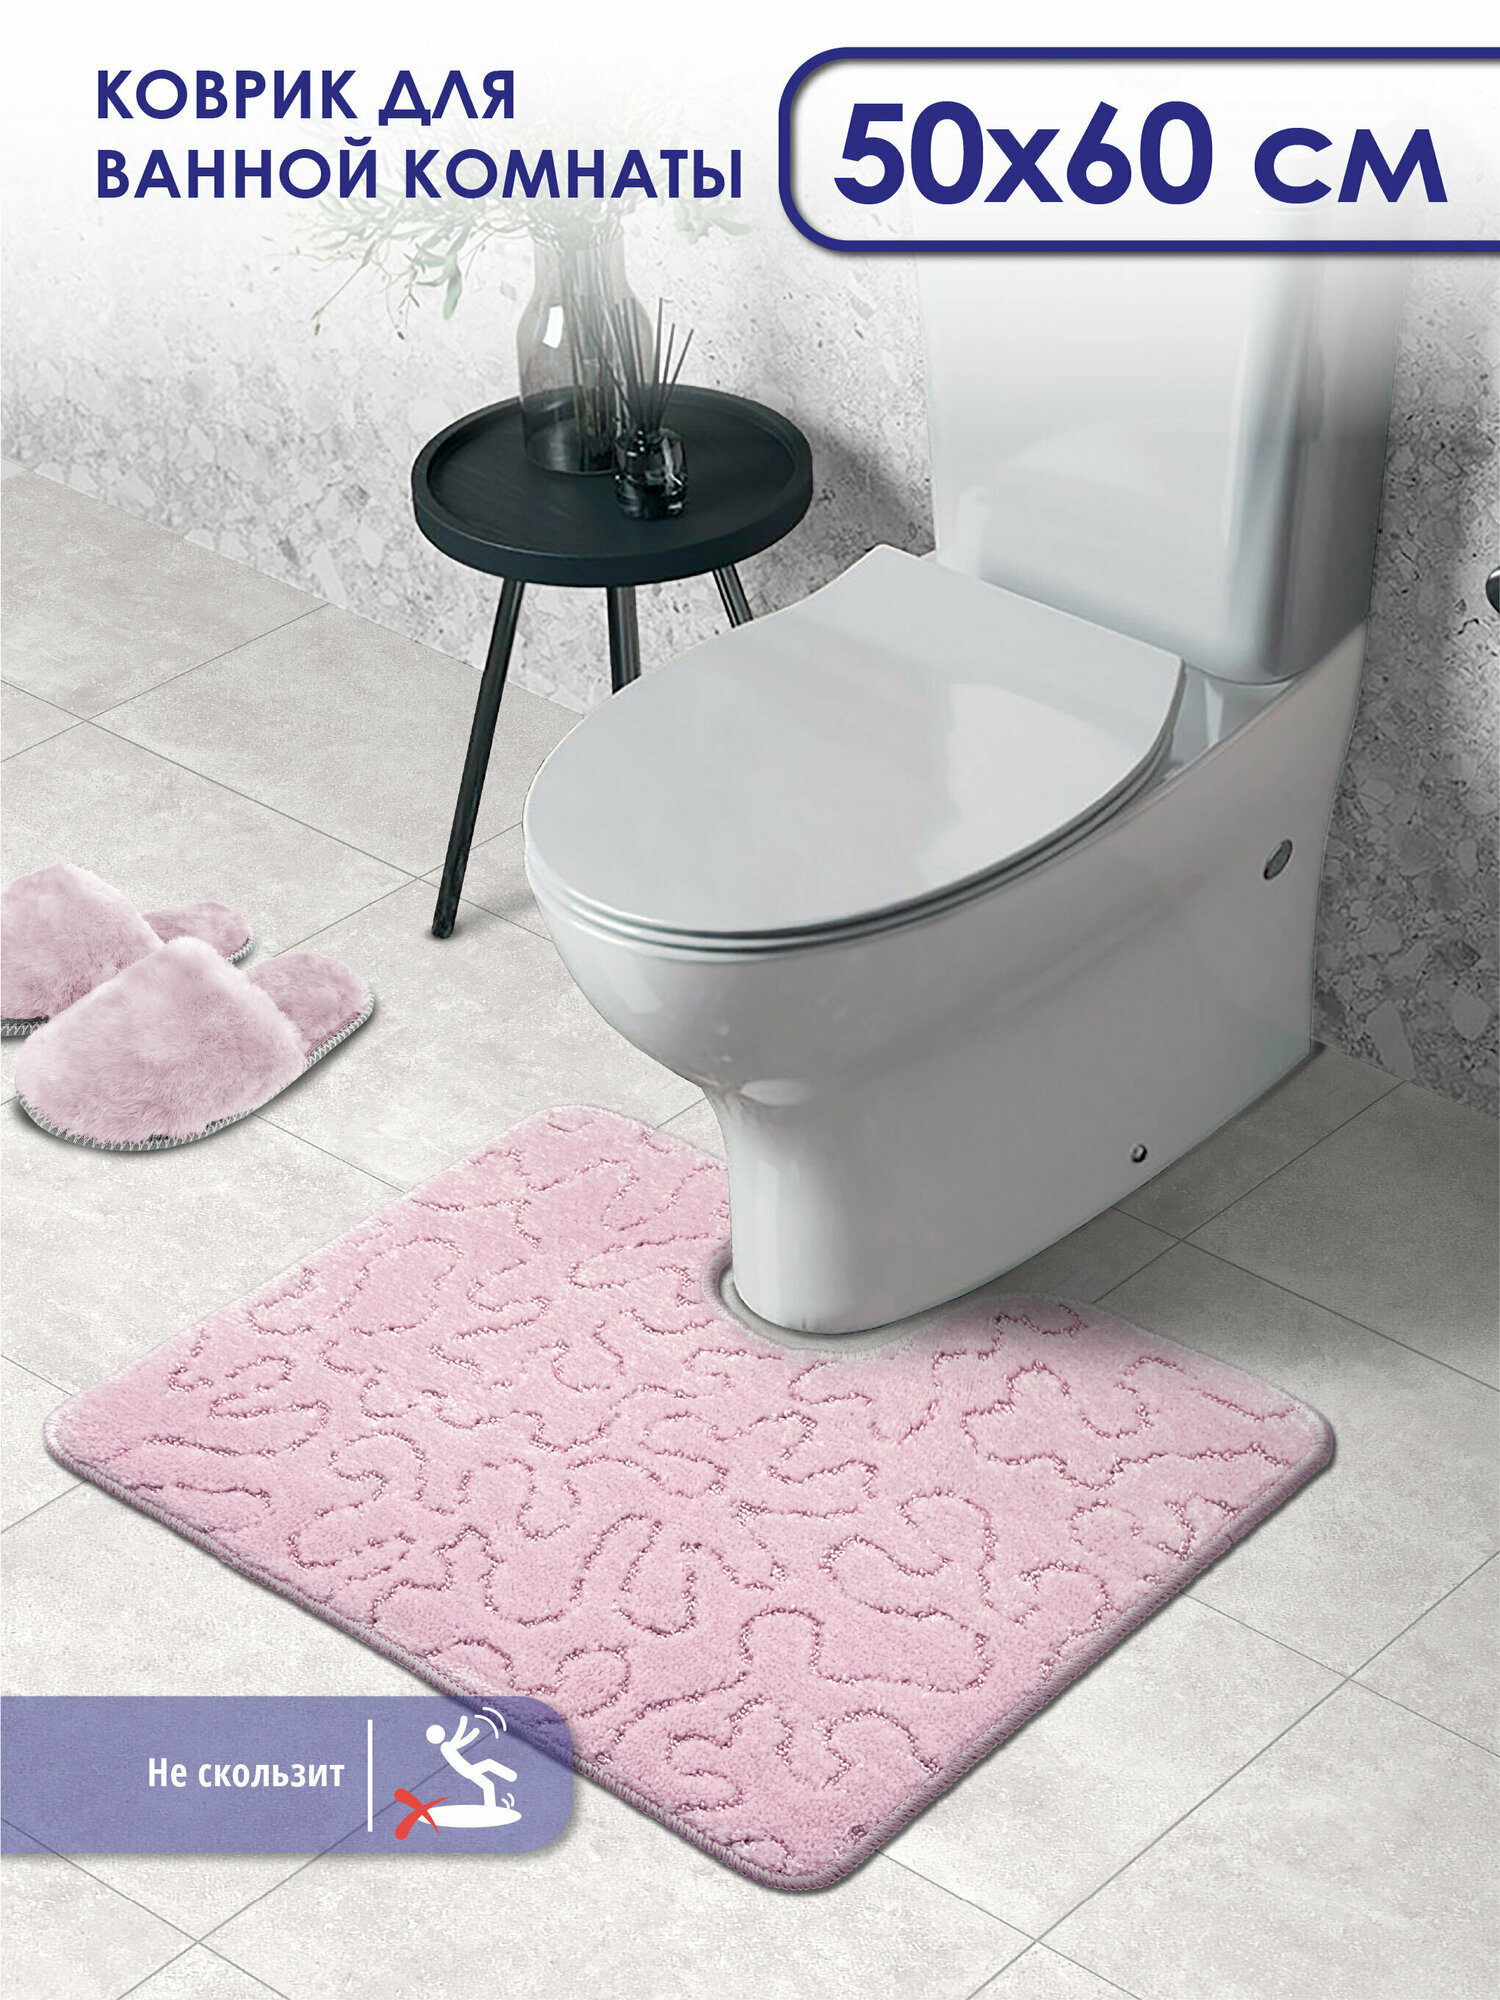 Коврик для ванной и туалета SHAHINTEX PP противоскользящий 50х60 003 фламинго 77, коврик для туалета с вырезом